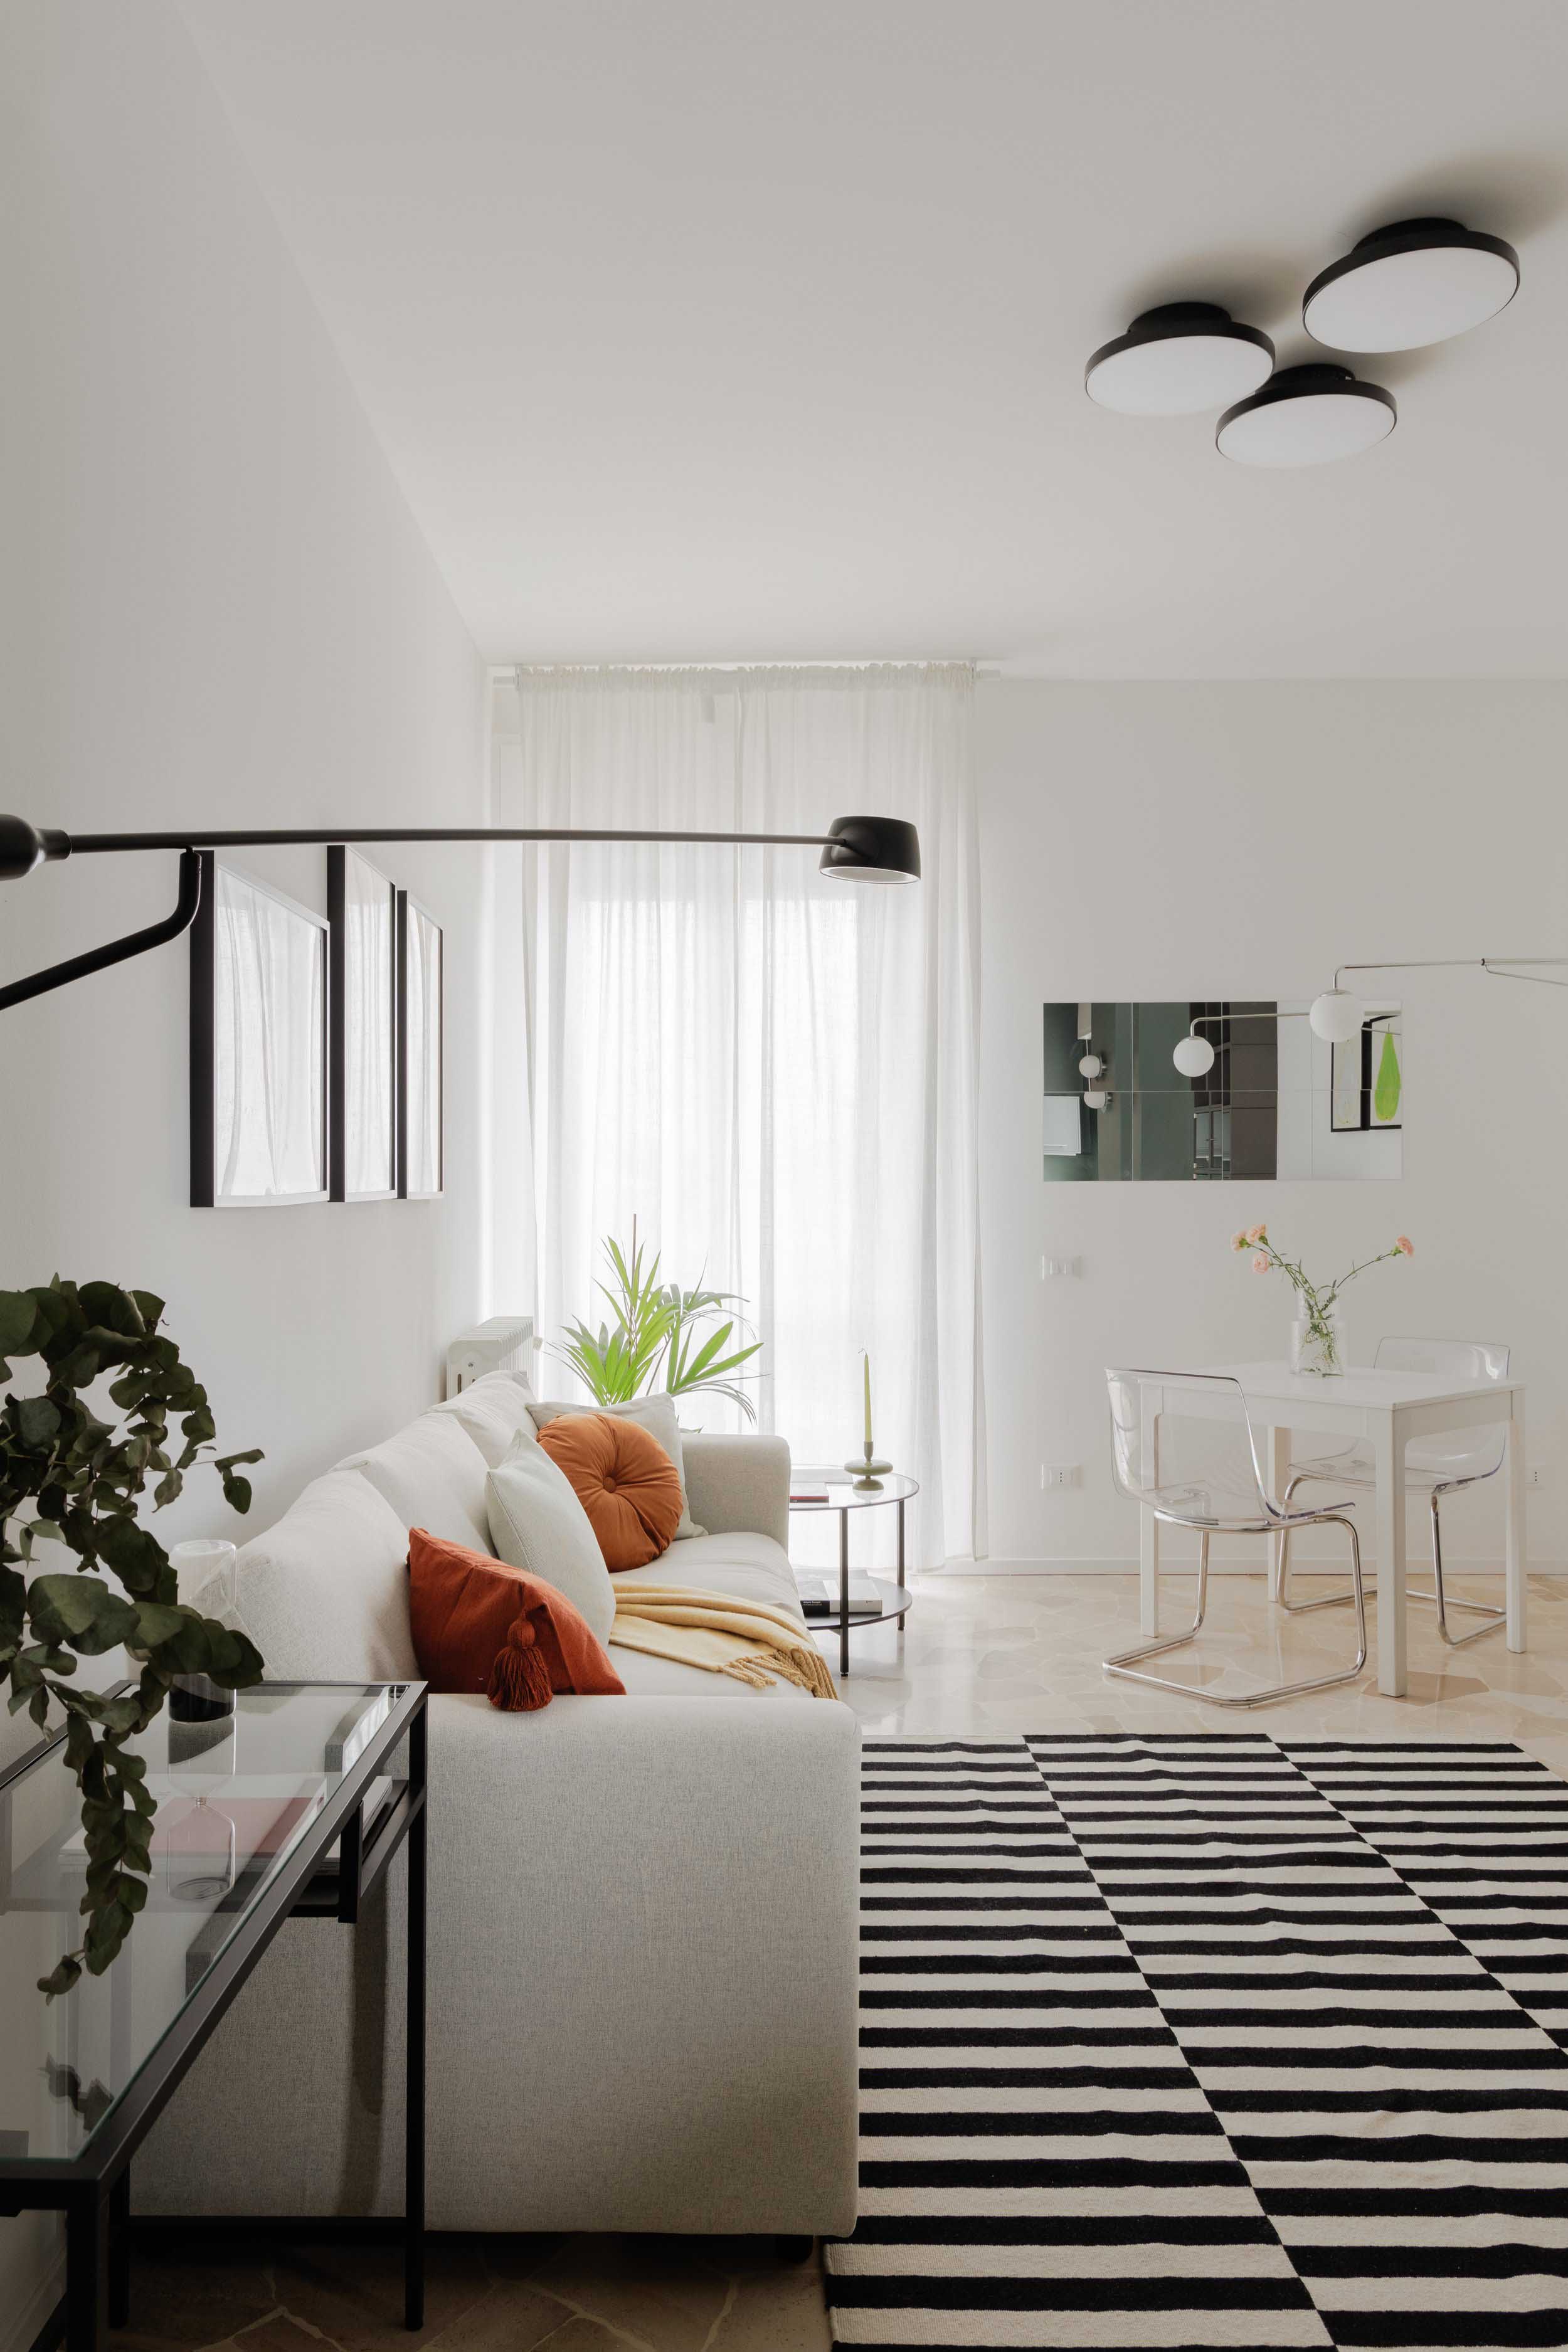 住宅設計,公寓設計,小戶型設計,50㎡公寓設計,公寓設計案例,公寓設計方案,Be.Arch Hub,米蘭,橄欖色